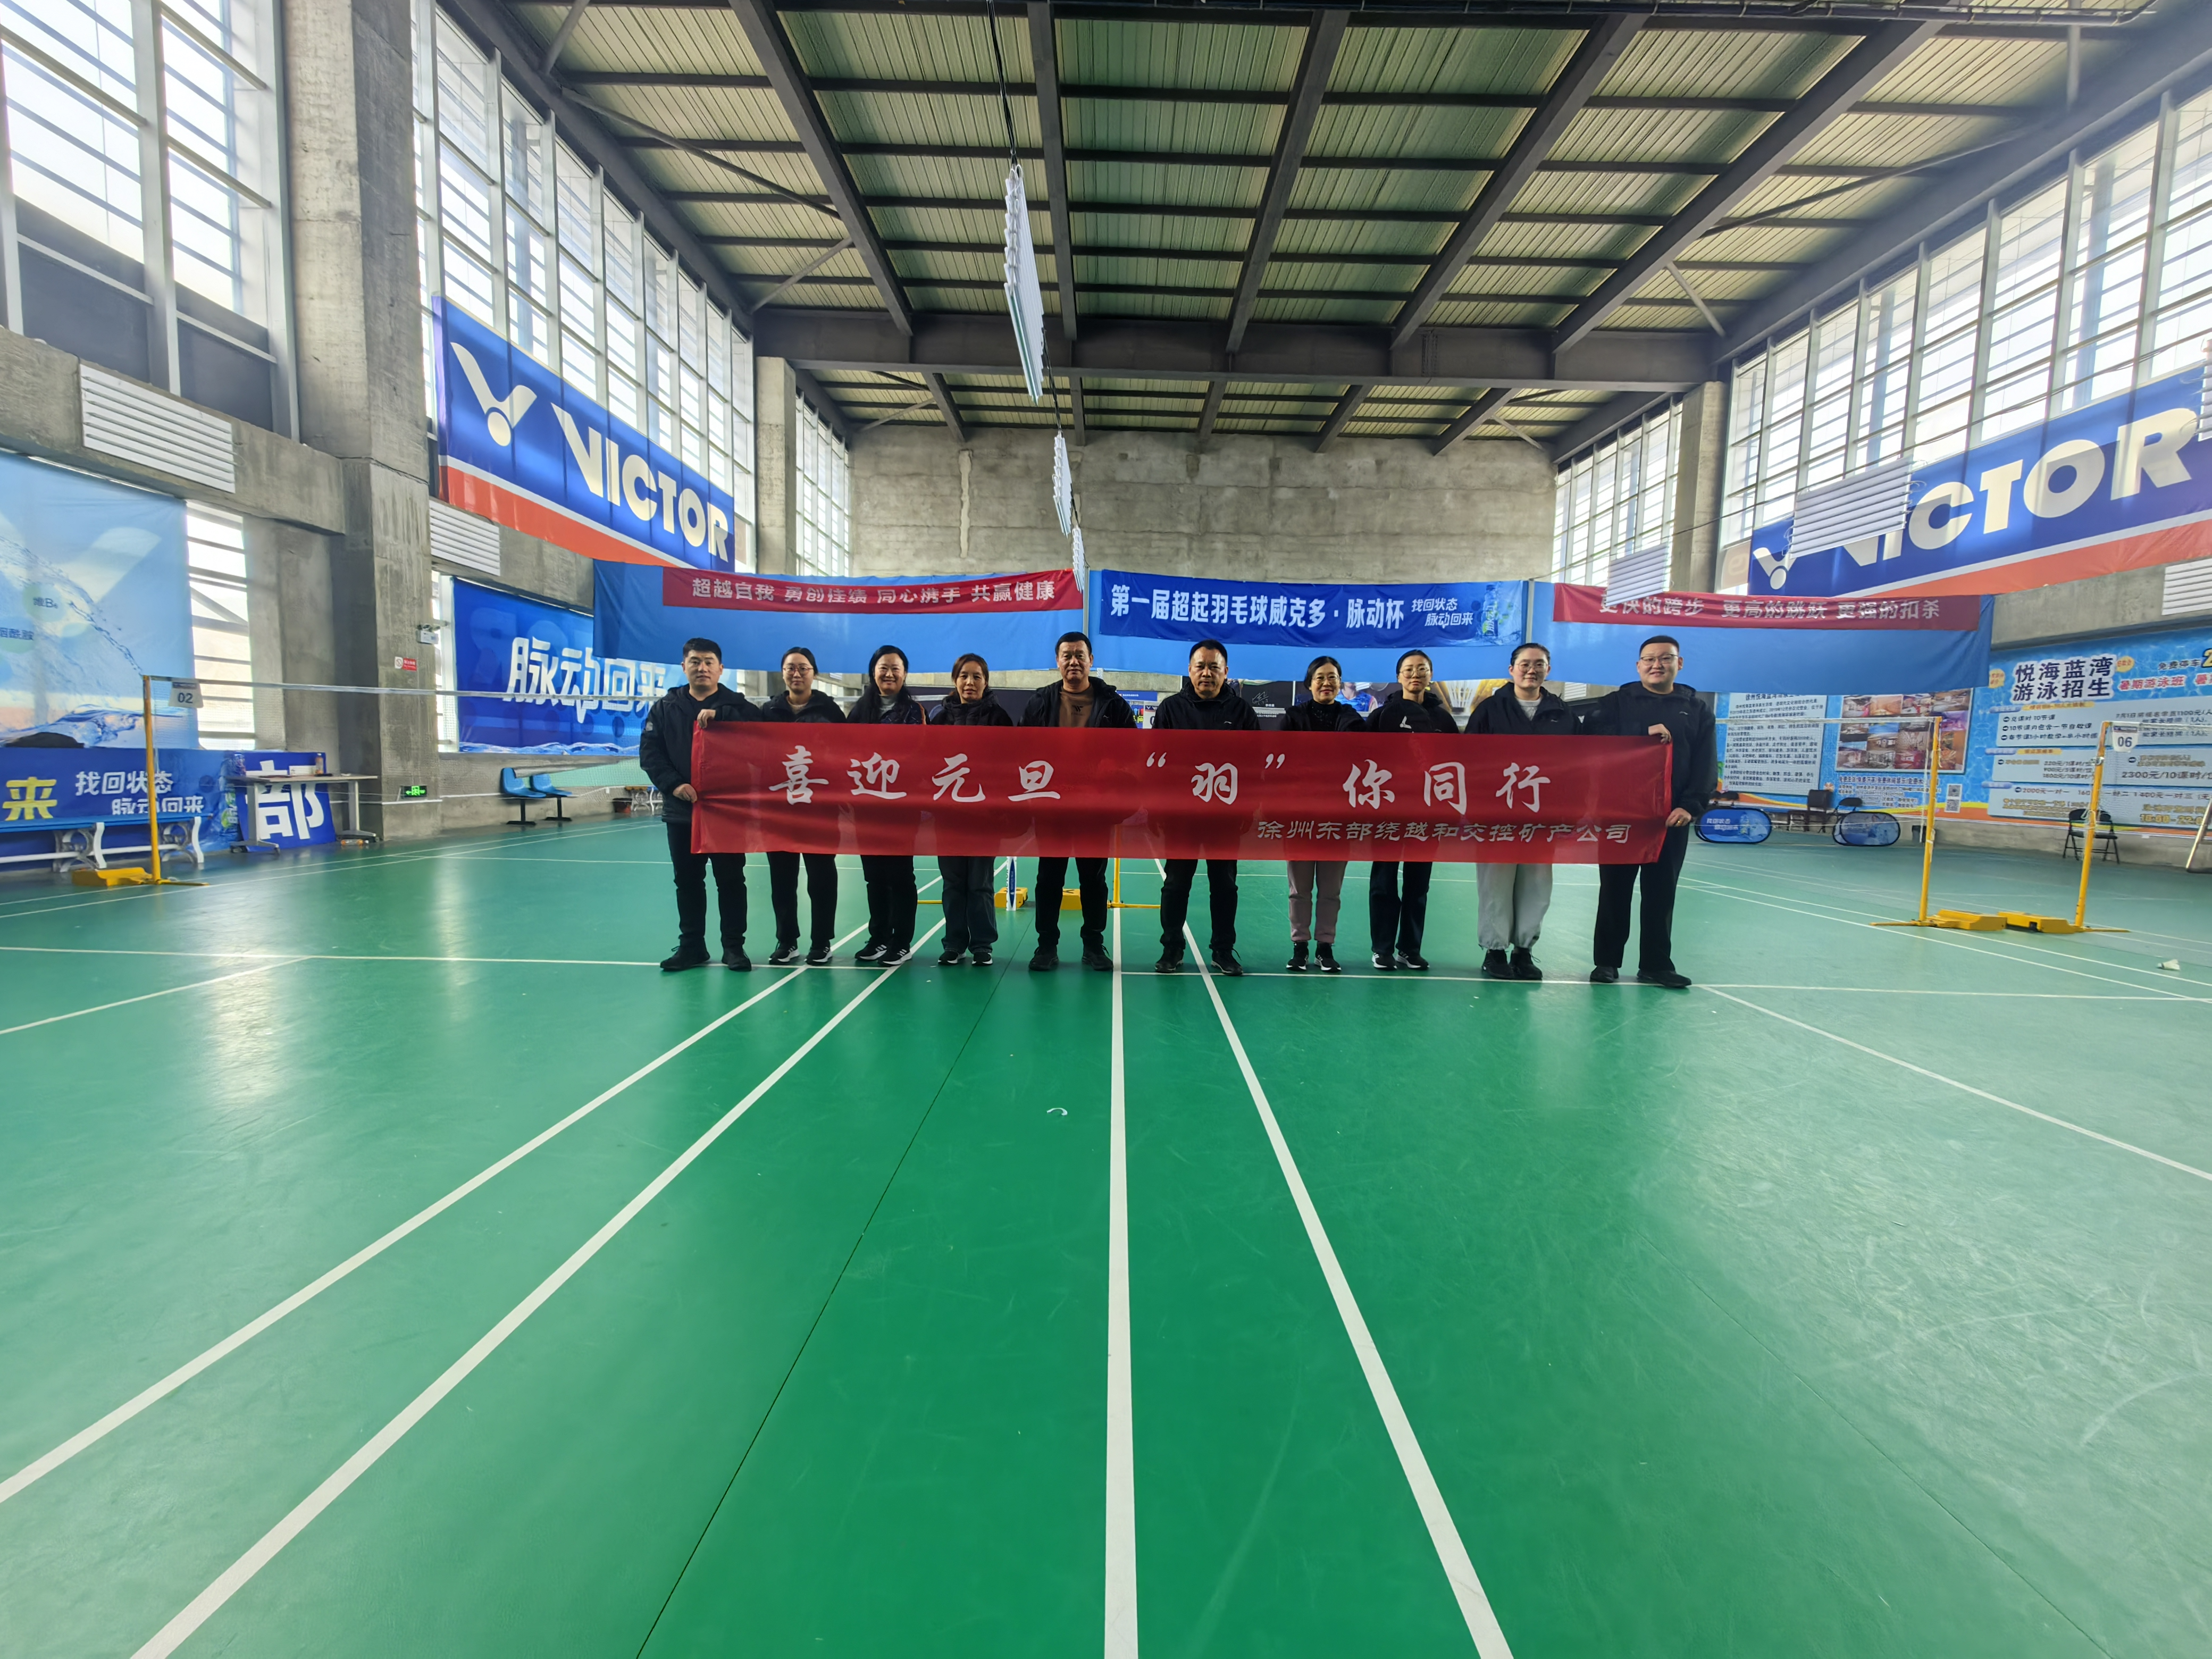 徐州东部绕越和交控矿产公司组织开展职工羽毛球竞赛活动